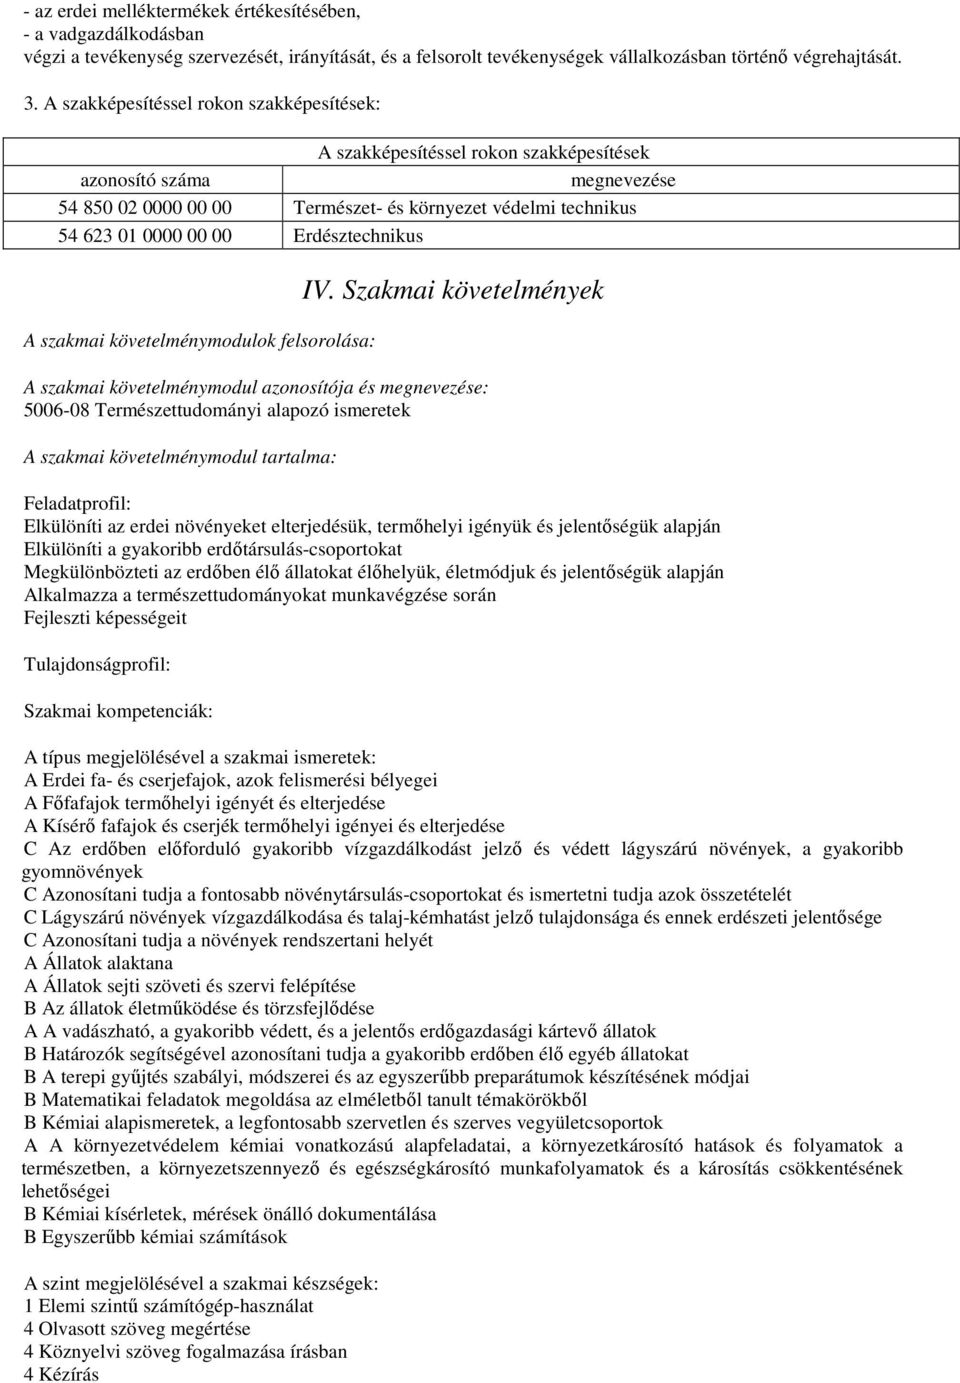 Erdésztechnikus A szakmai követelménymodulok felsorolása: IV.